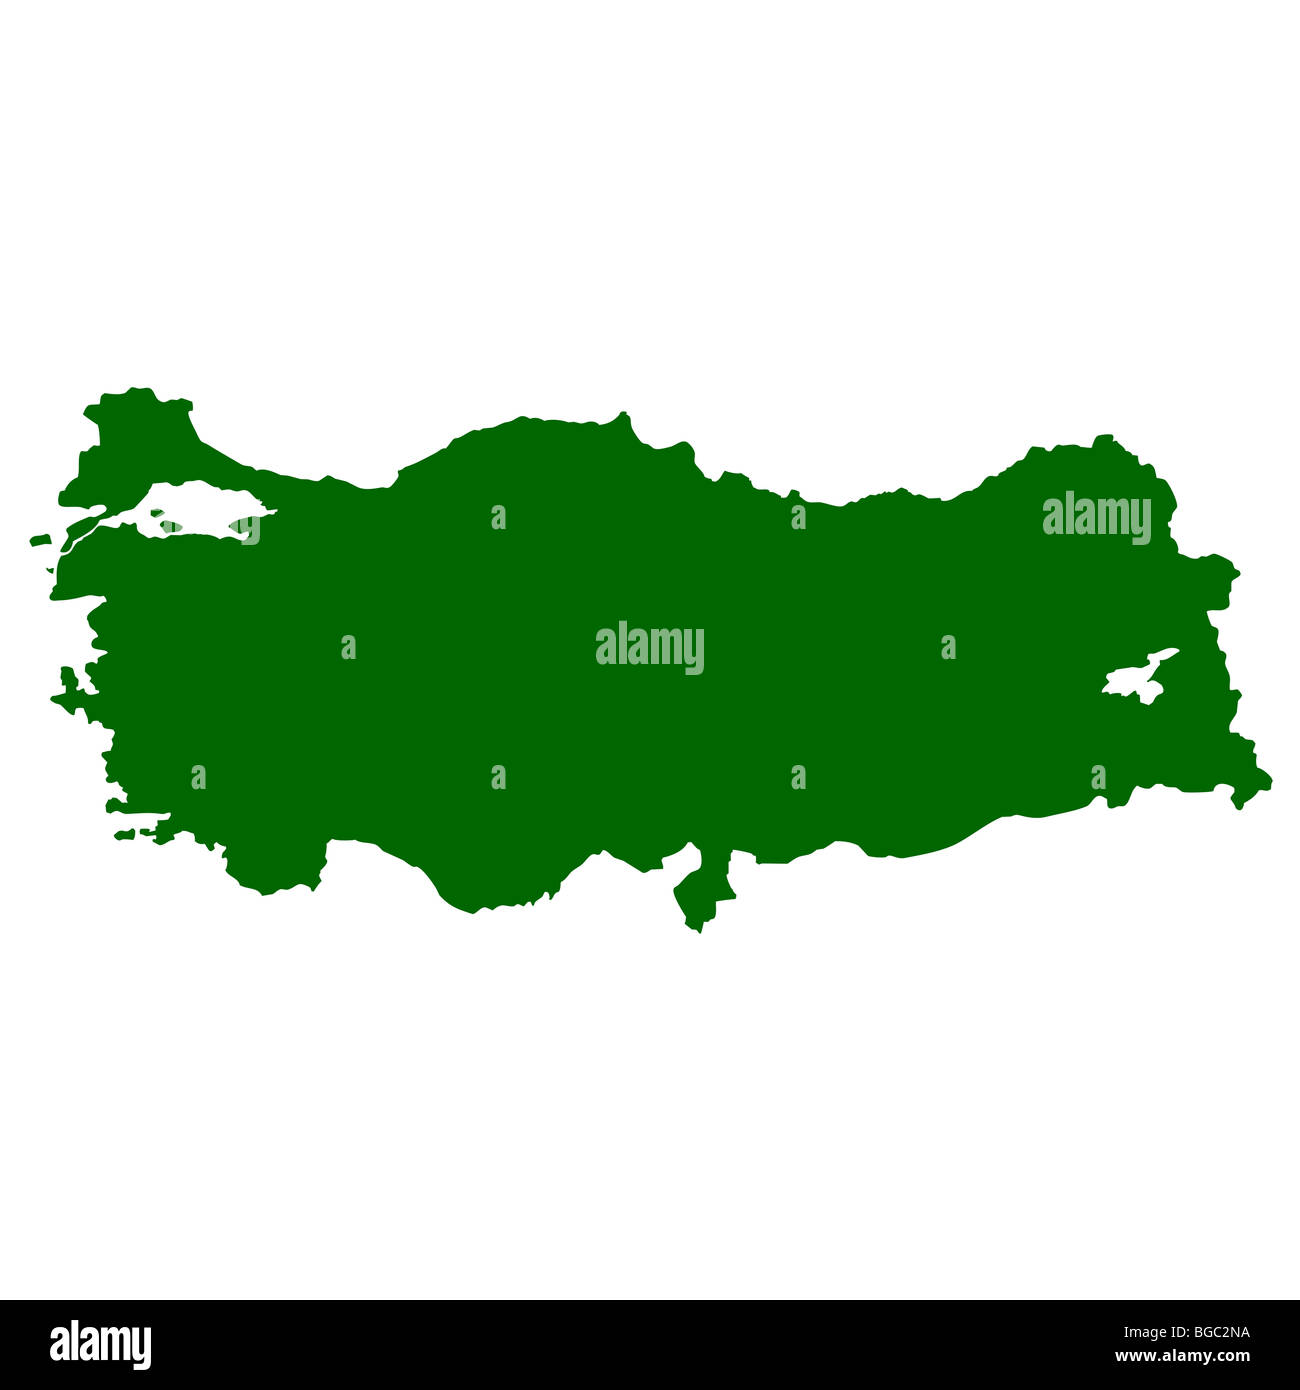 Map of Turkey isolated on white background. Stock Photo